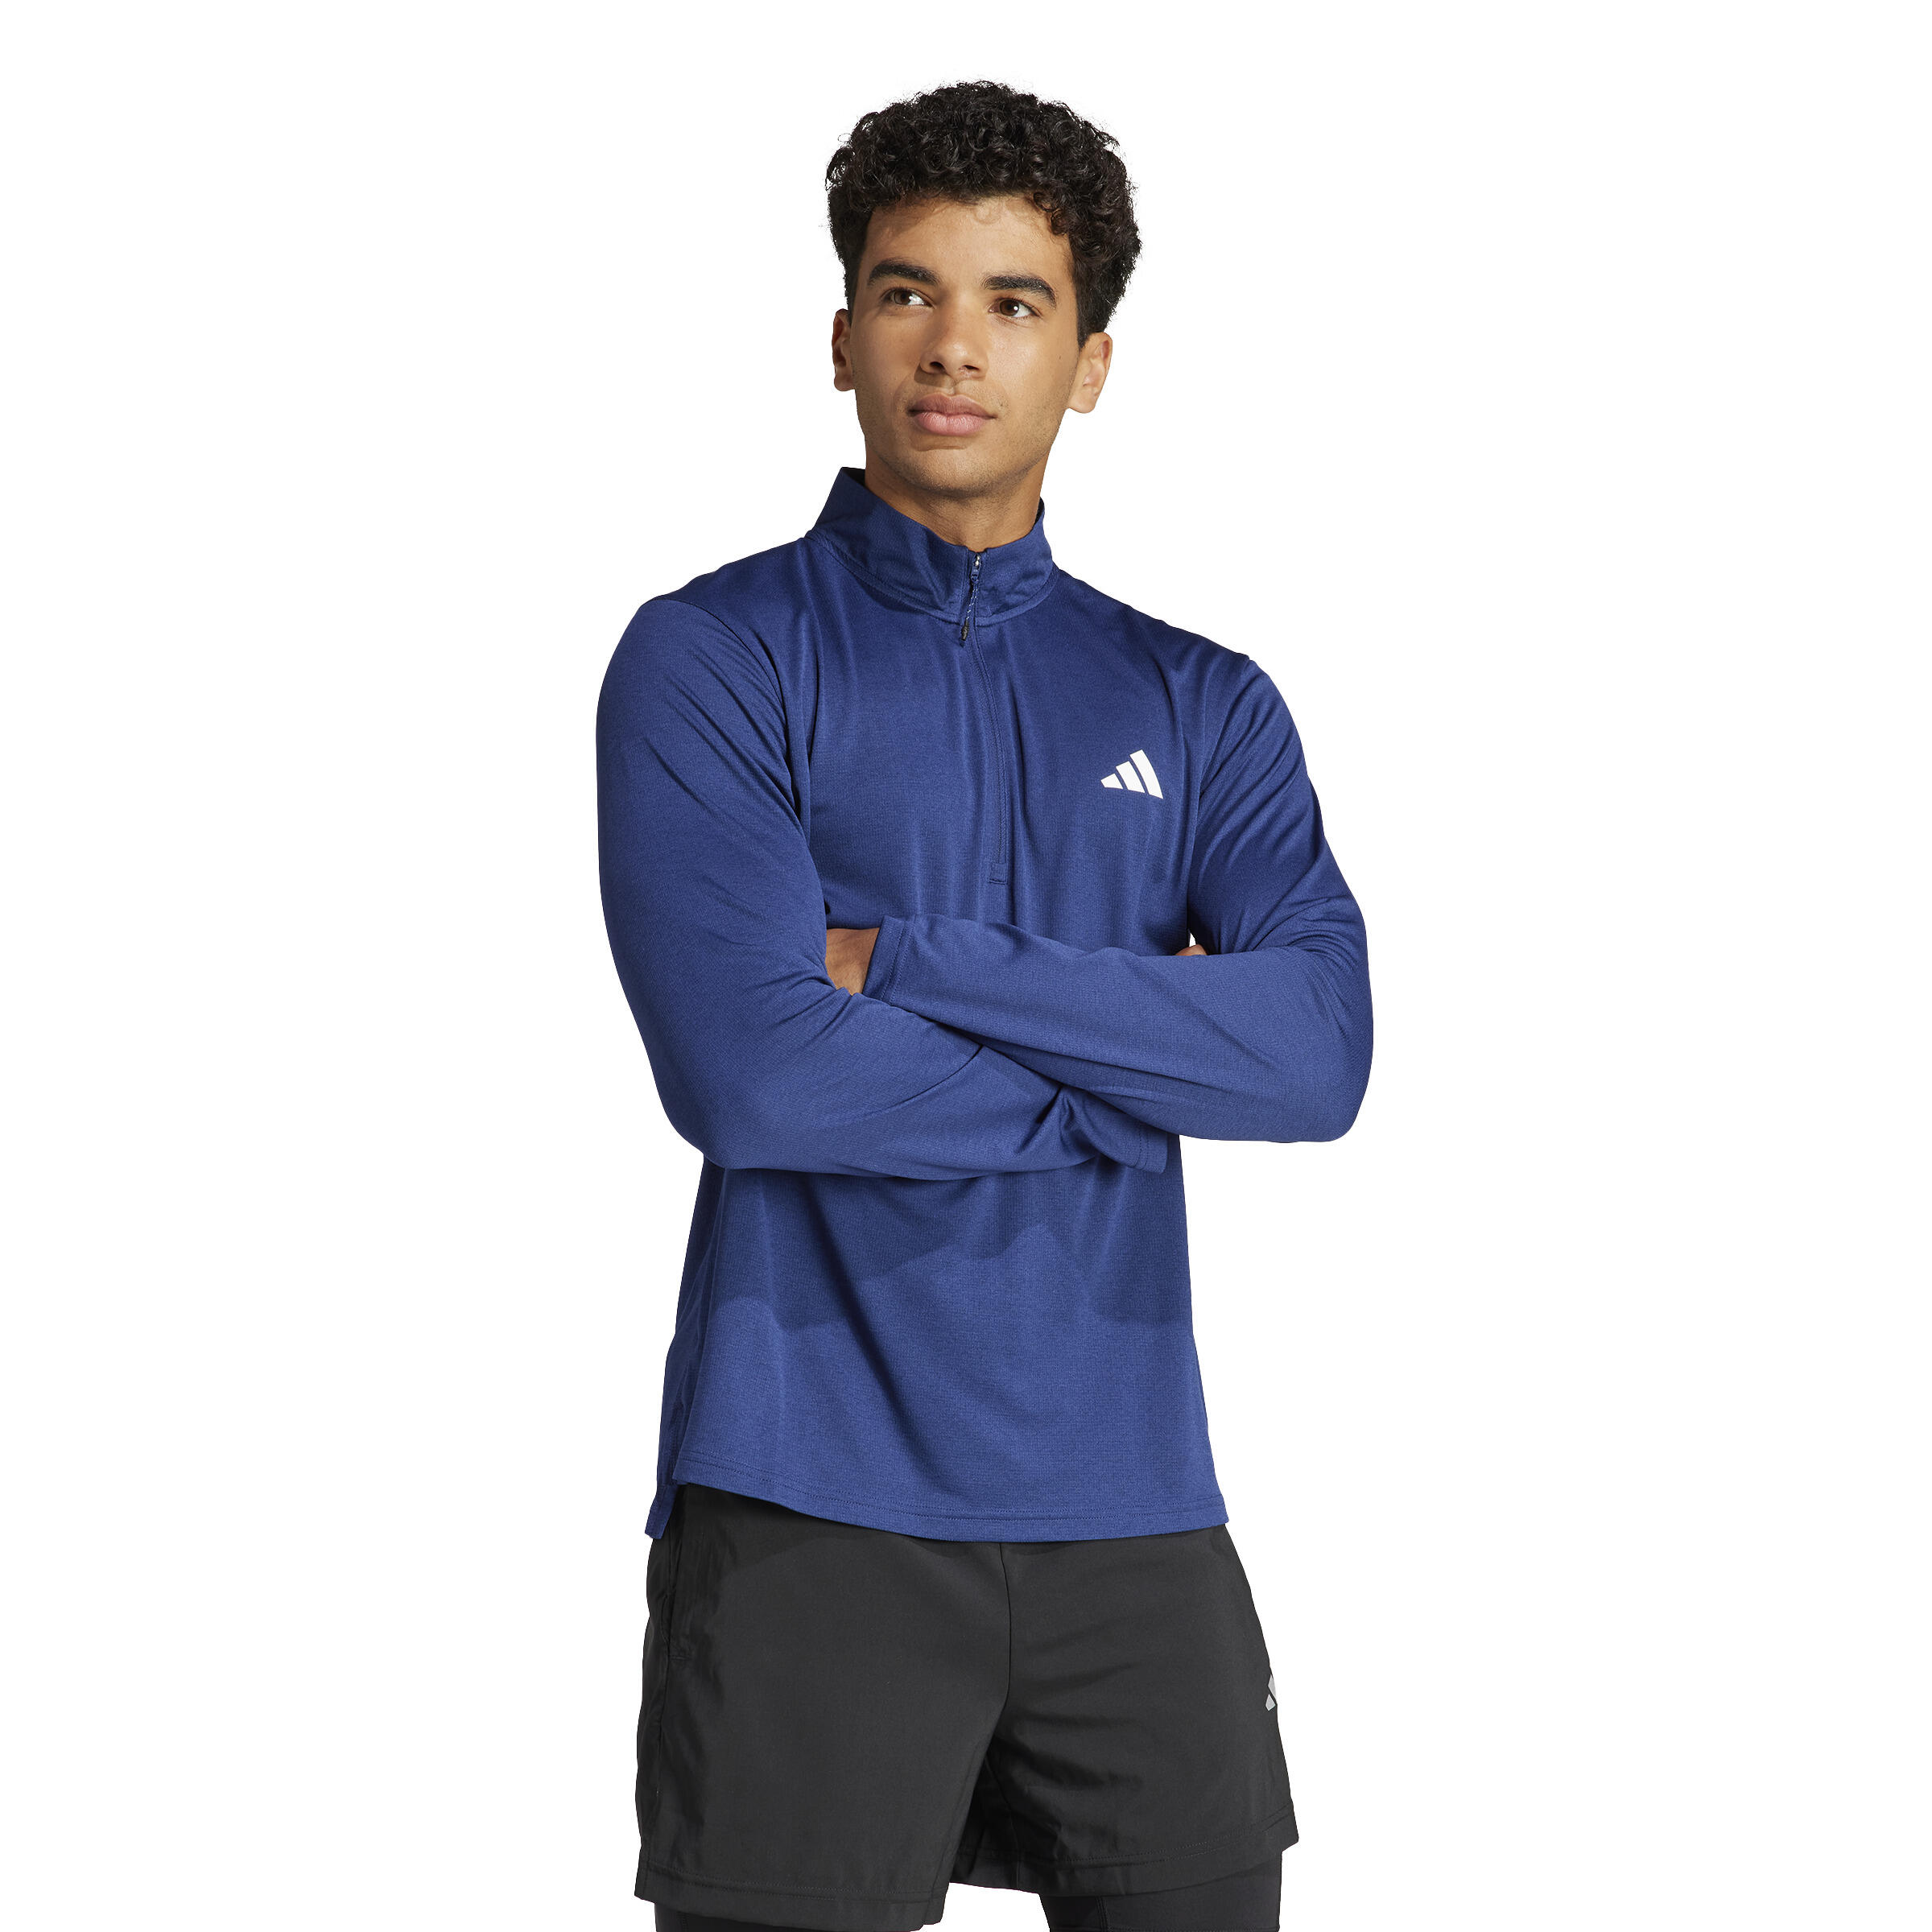 Mens Cardio Fitness Sweatshirt with Zip-Up Collar - Blue 1/7